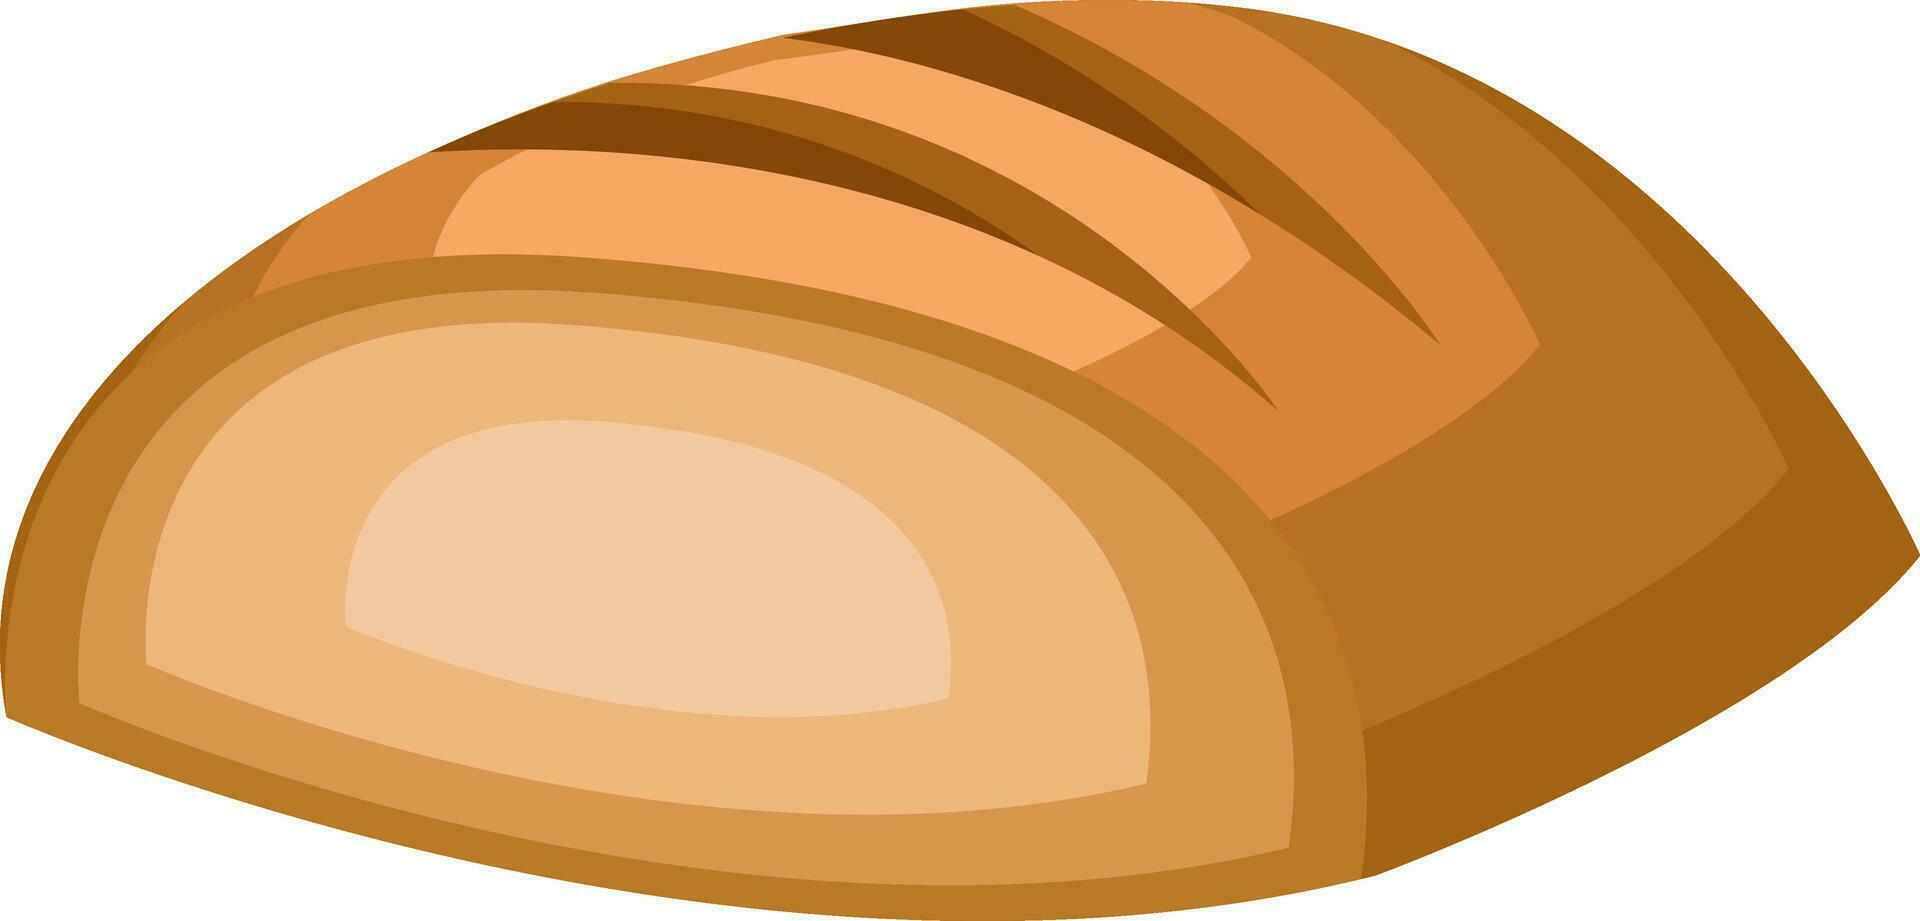 pão fatia vetor cor ilustração.